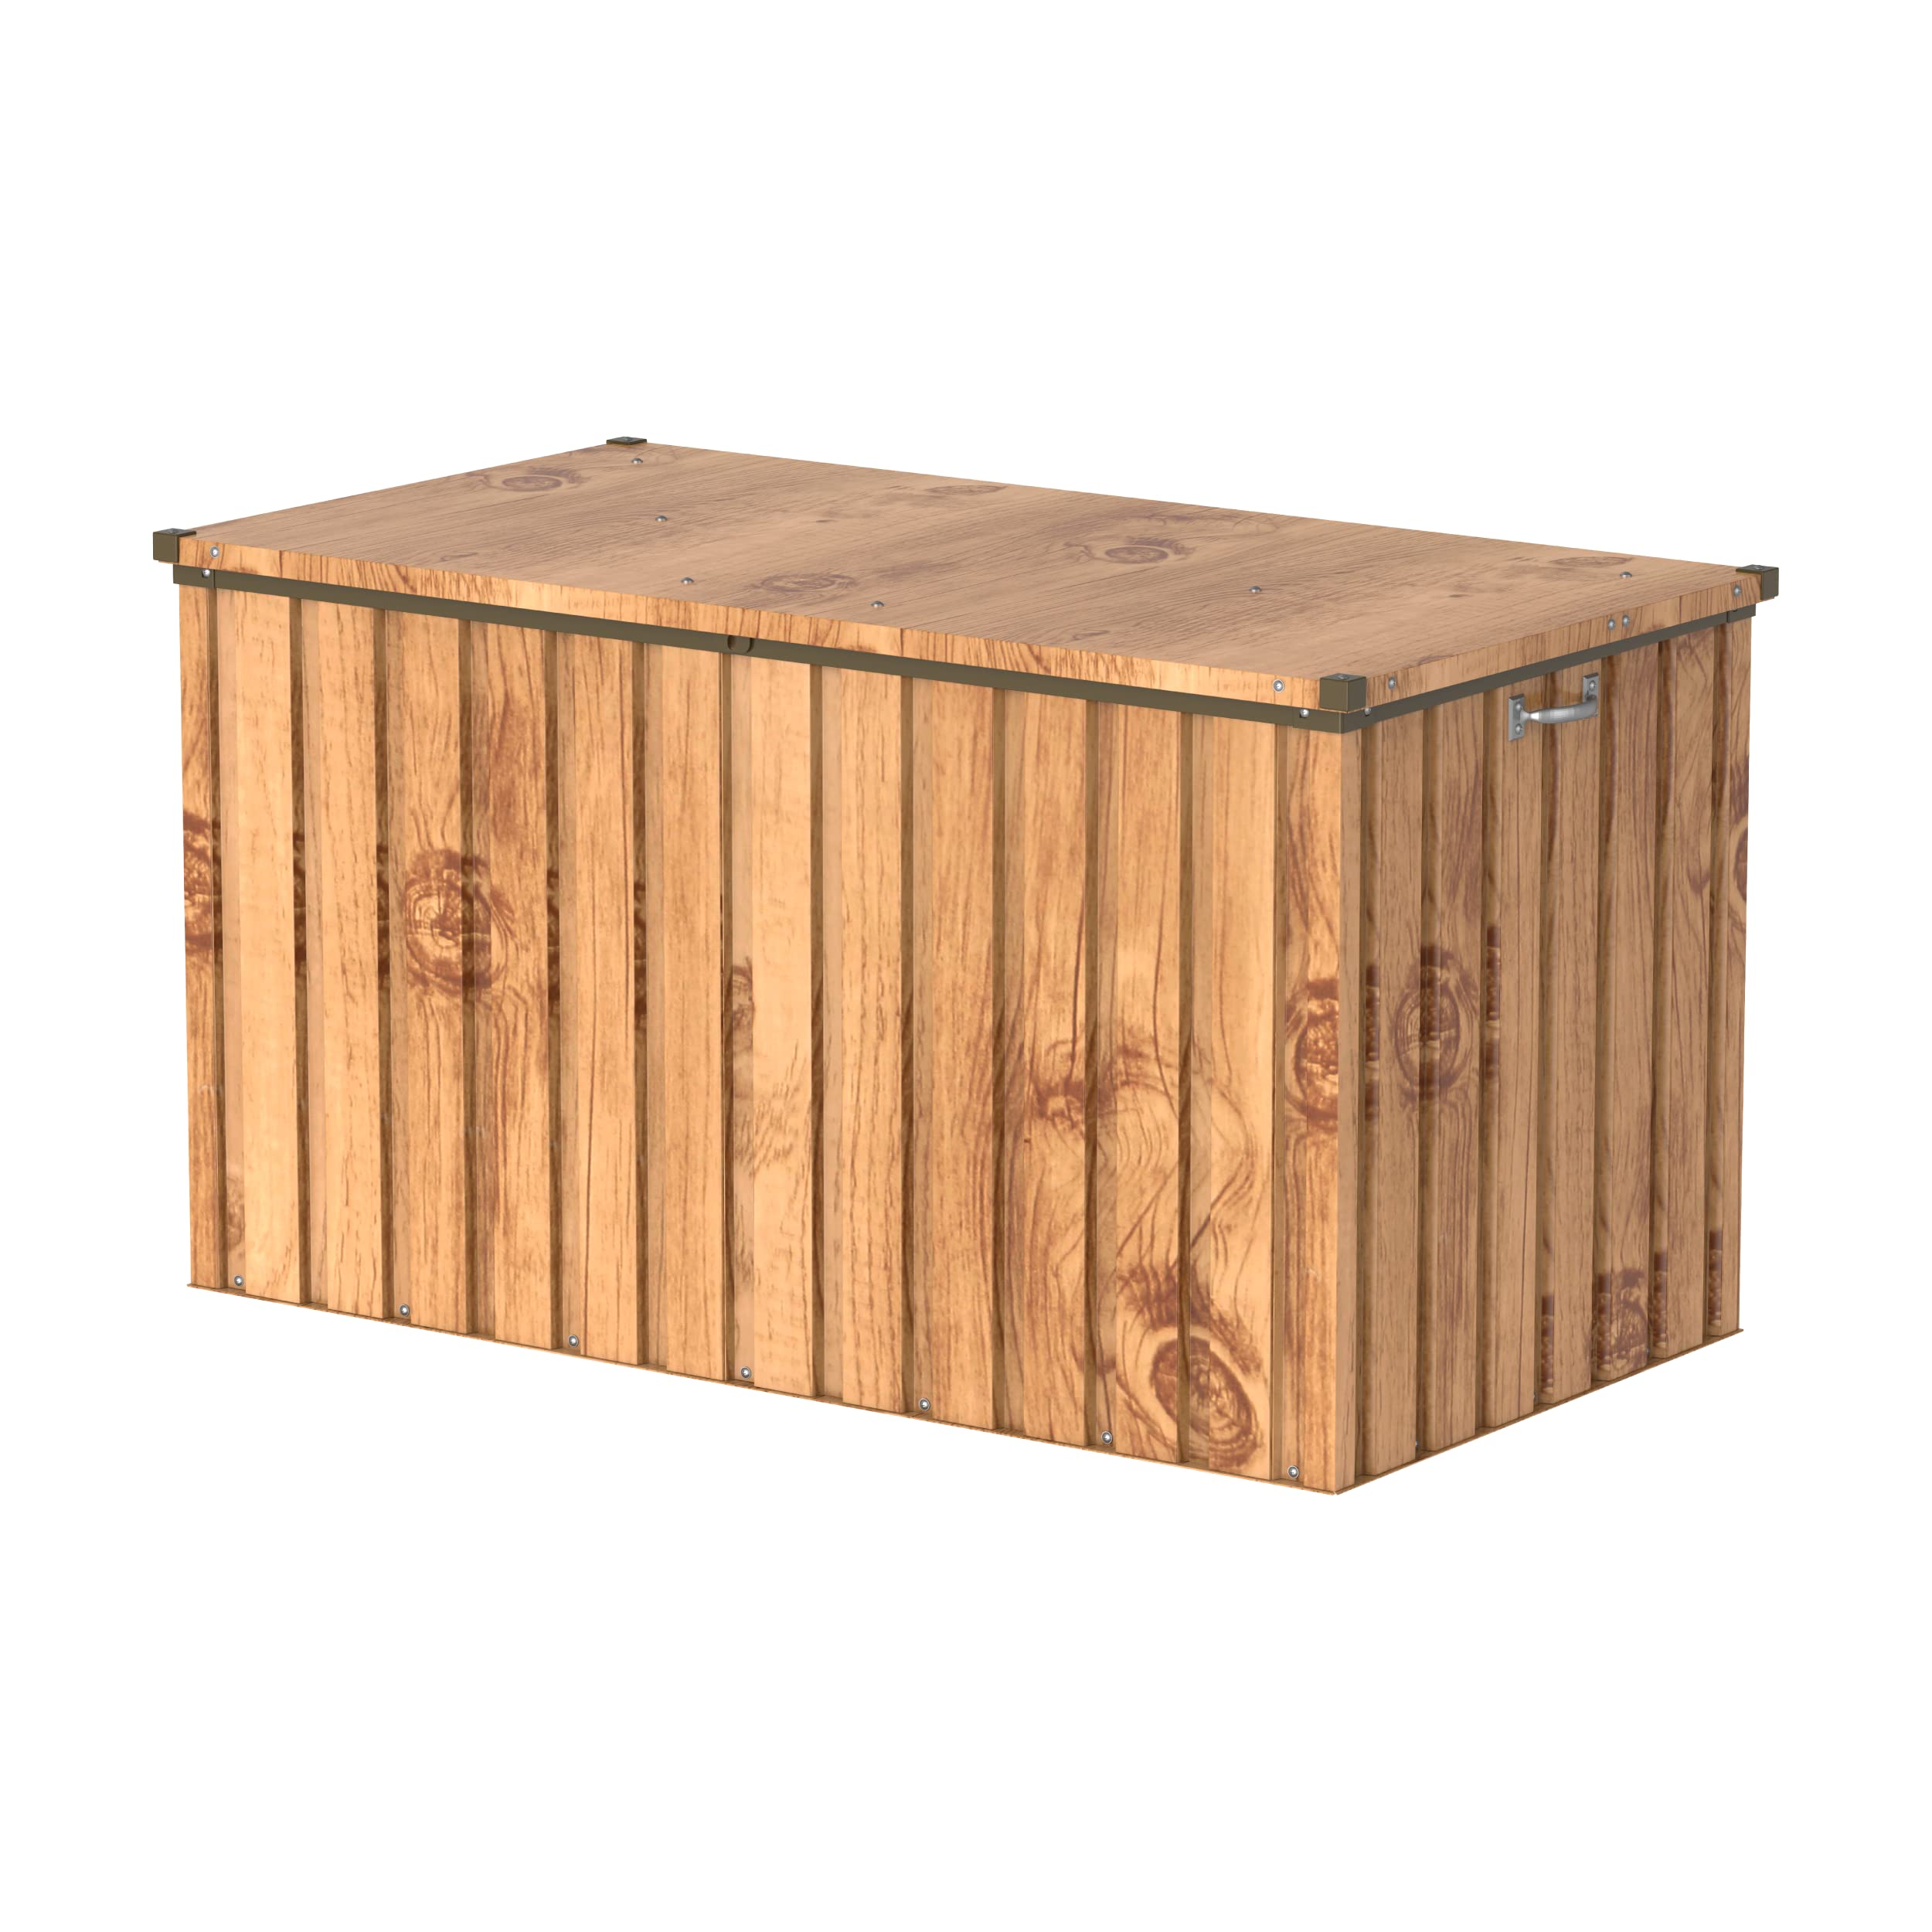 Duramax DH 1.3 (585L) Kissenbox aus Metall mit hydraulischer Gasdruckfeder und Vorhängeschlossöse, Terrassenbox und Gartenmöbelaufbewahrung für den Außenbereich, Holzmaserung